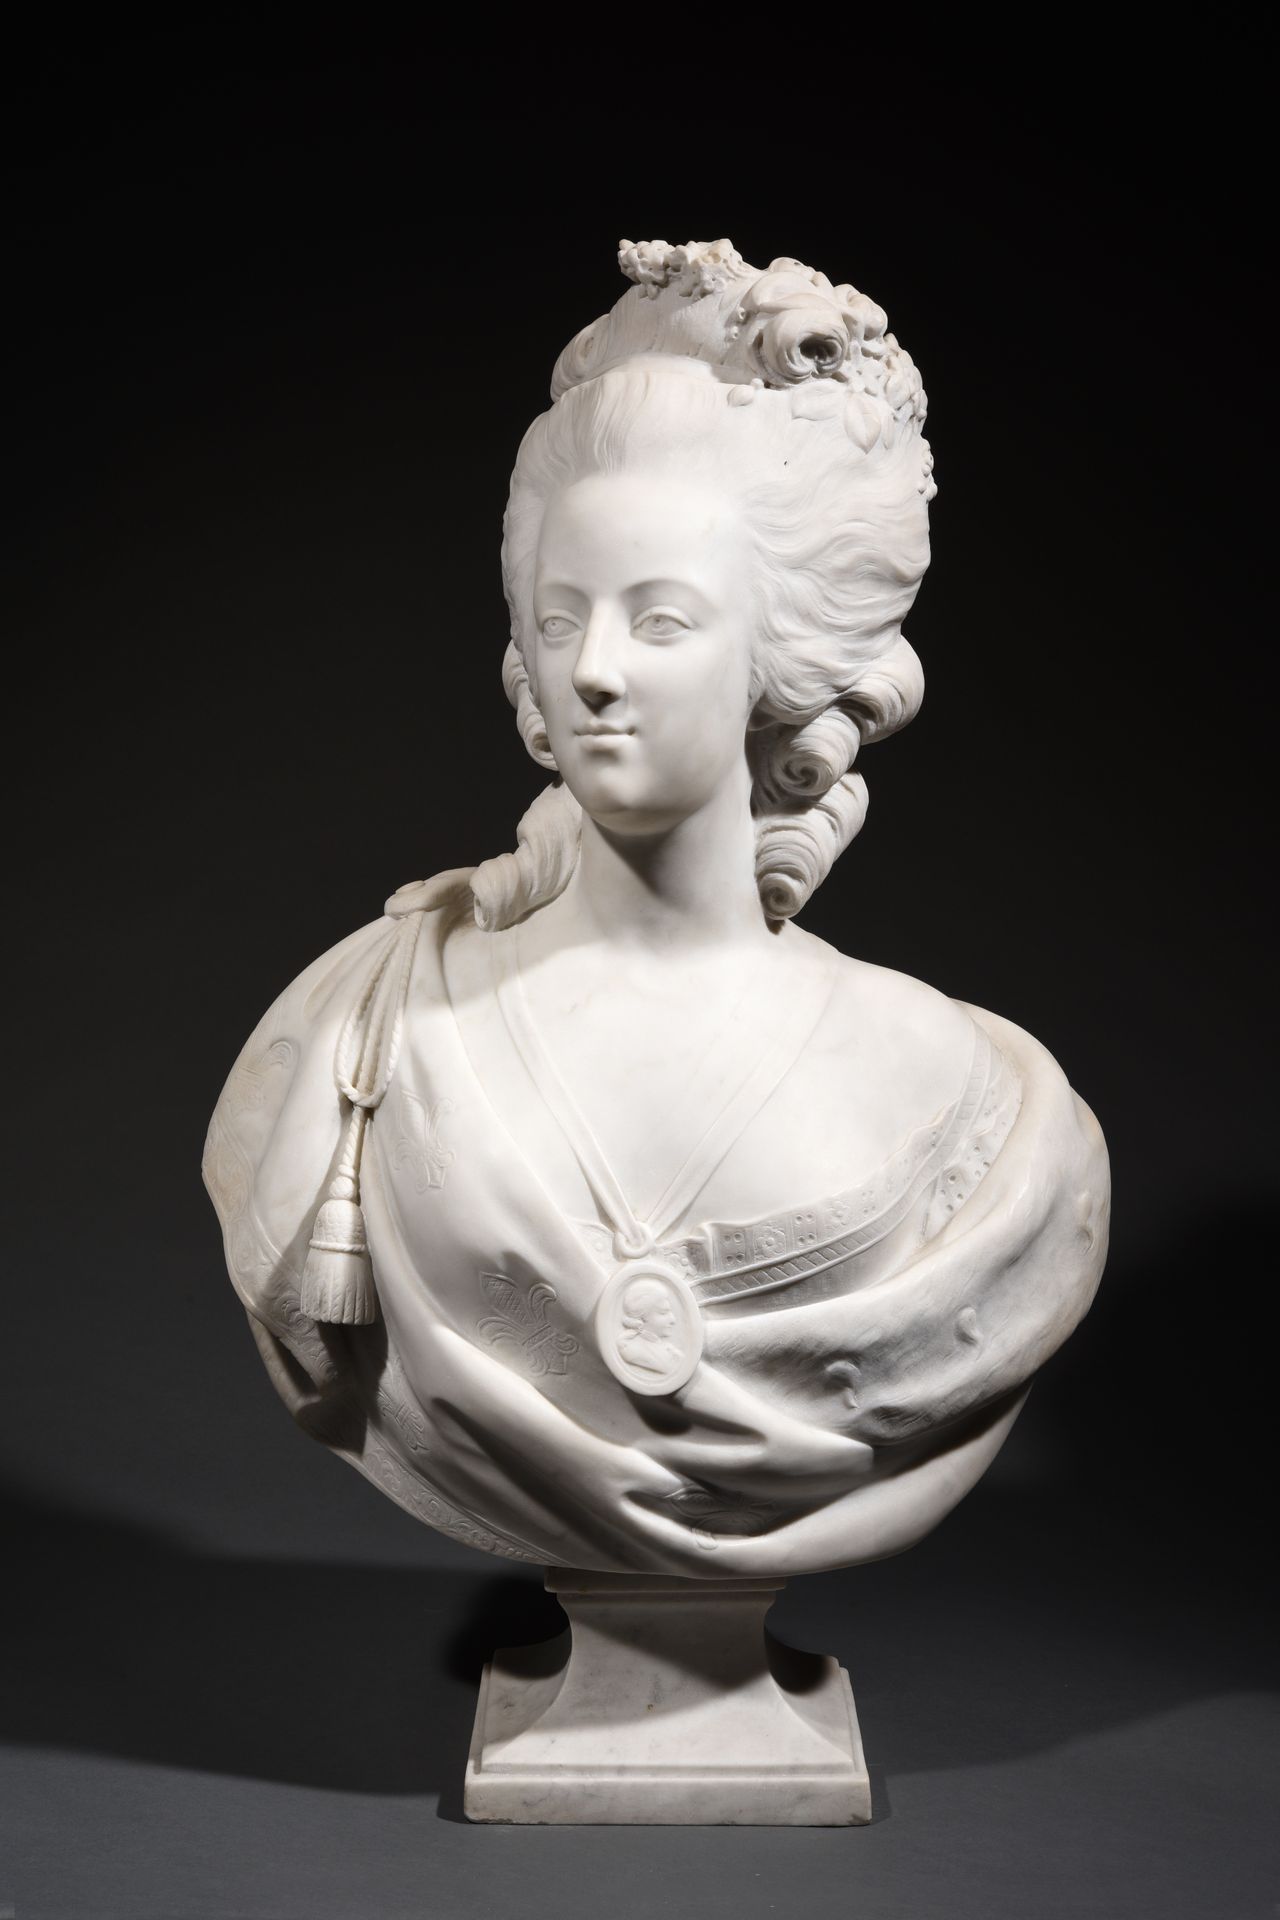 Null Marie-antoinette的半身像

携带路易十六的奖章

白色大理石的雕塑

背面签有 "Nicoli

H.80厘米